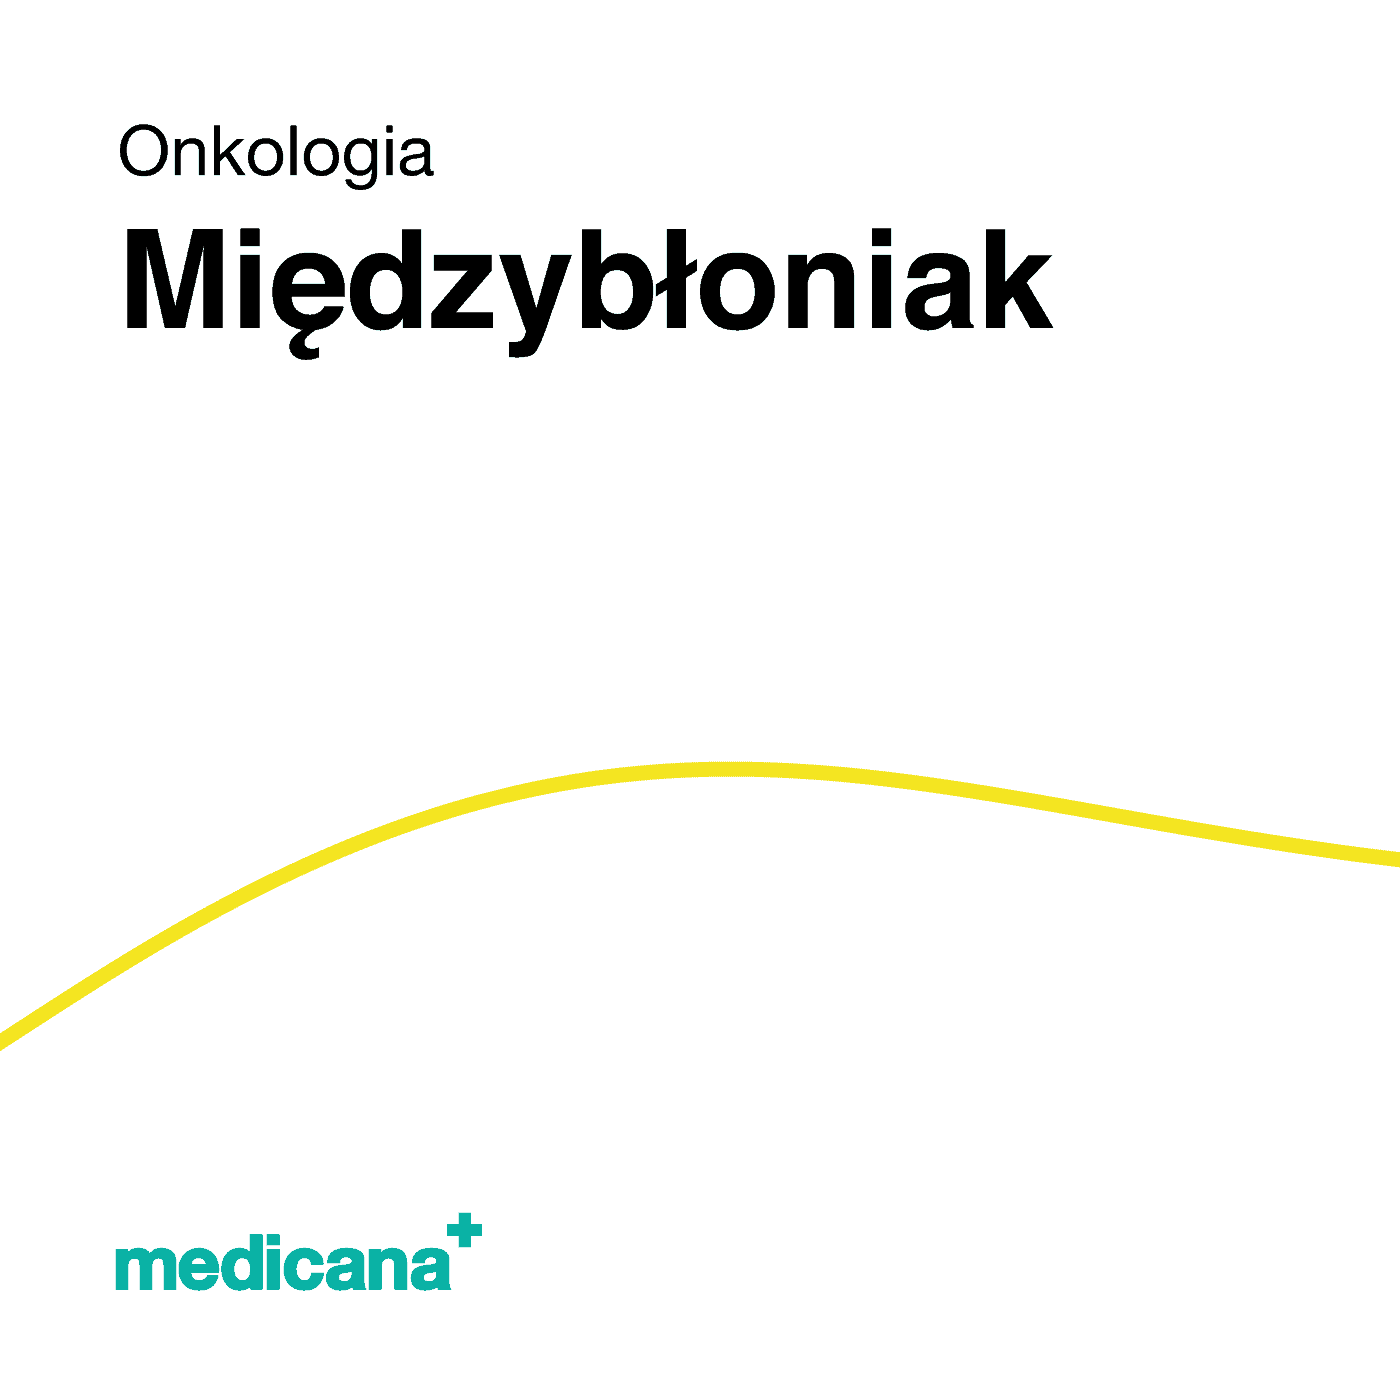 Grafika, białe tło z żółtą kreską, czarnym napisem Onkologia - Międzybłoniak i logo Medicana Centrum Terapii Medyczna Marihuana w lewym dolnym rogu.